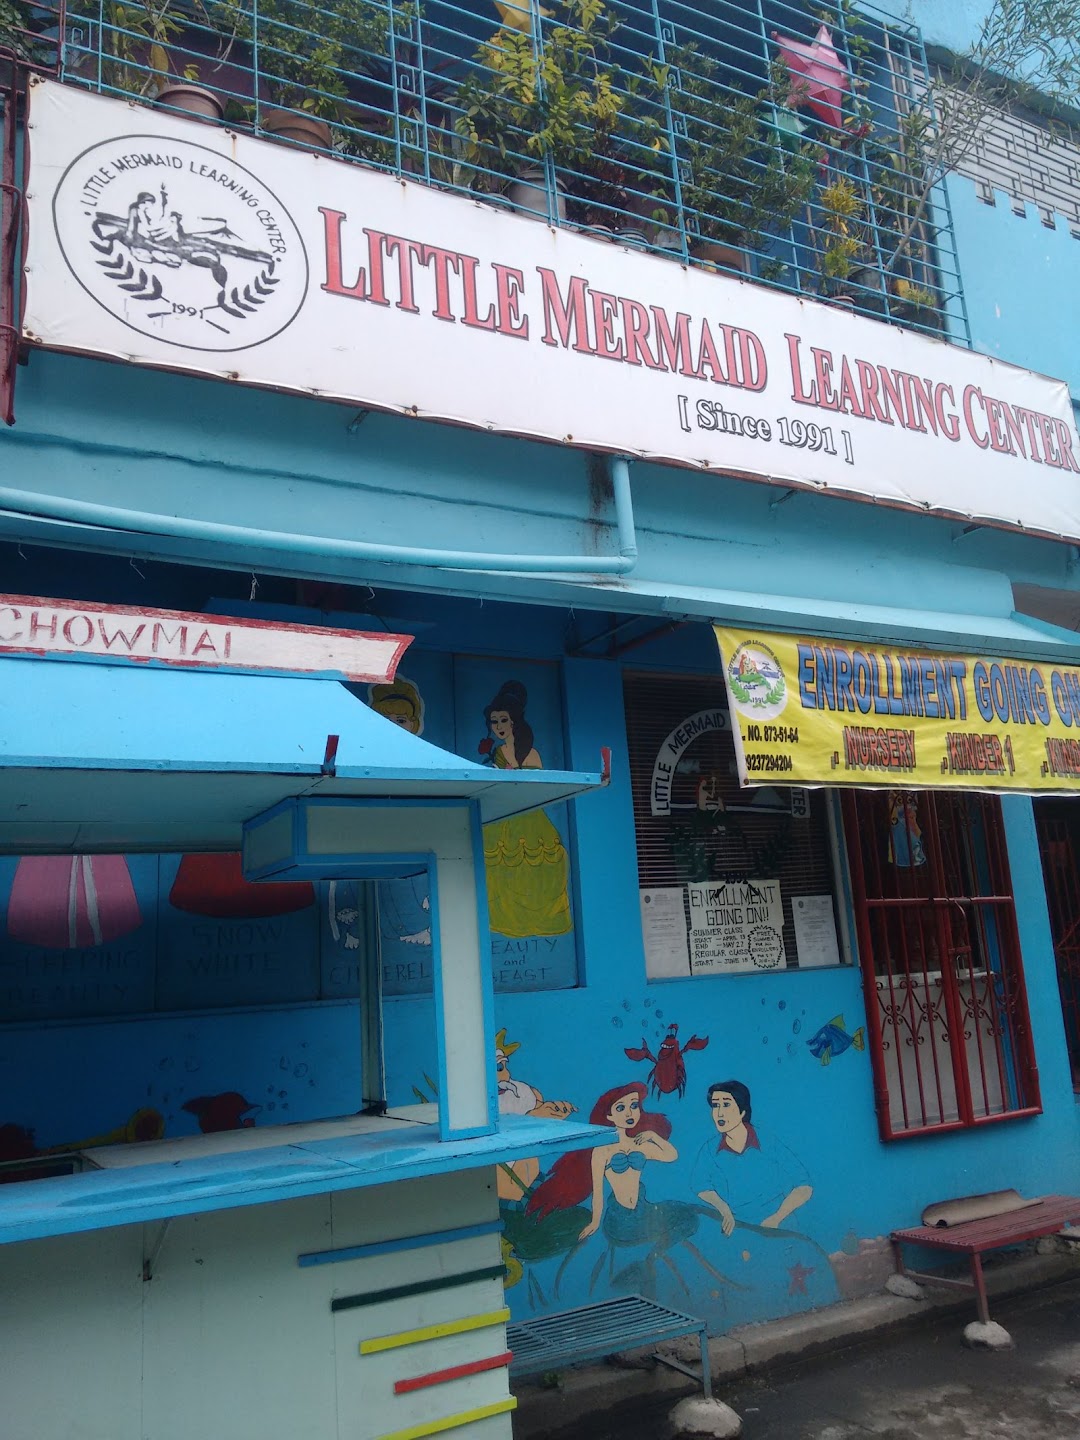 Little Mermaid Learning Center